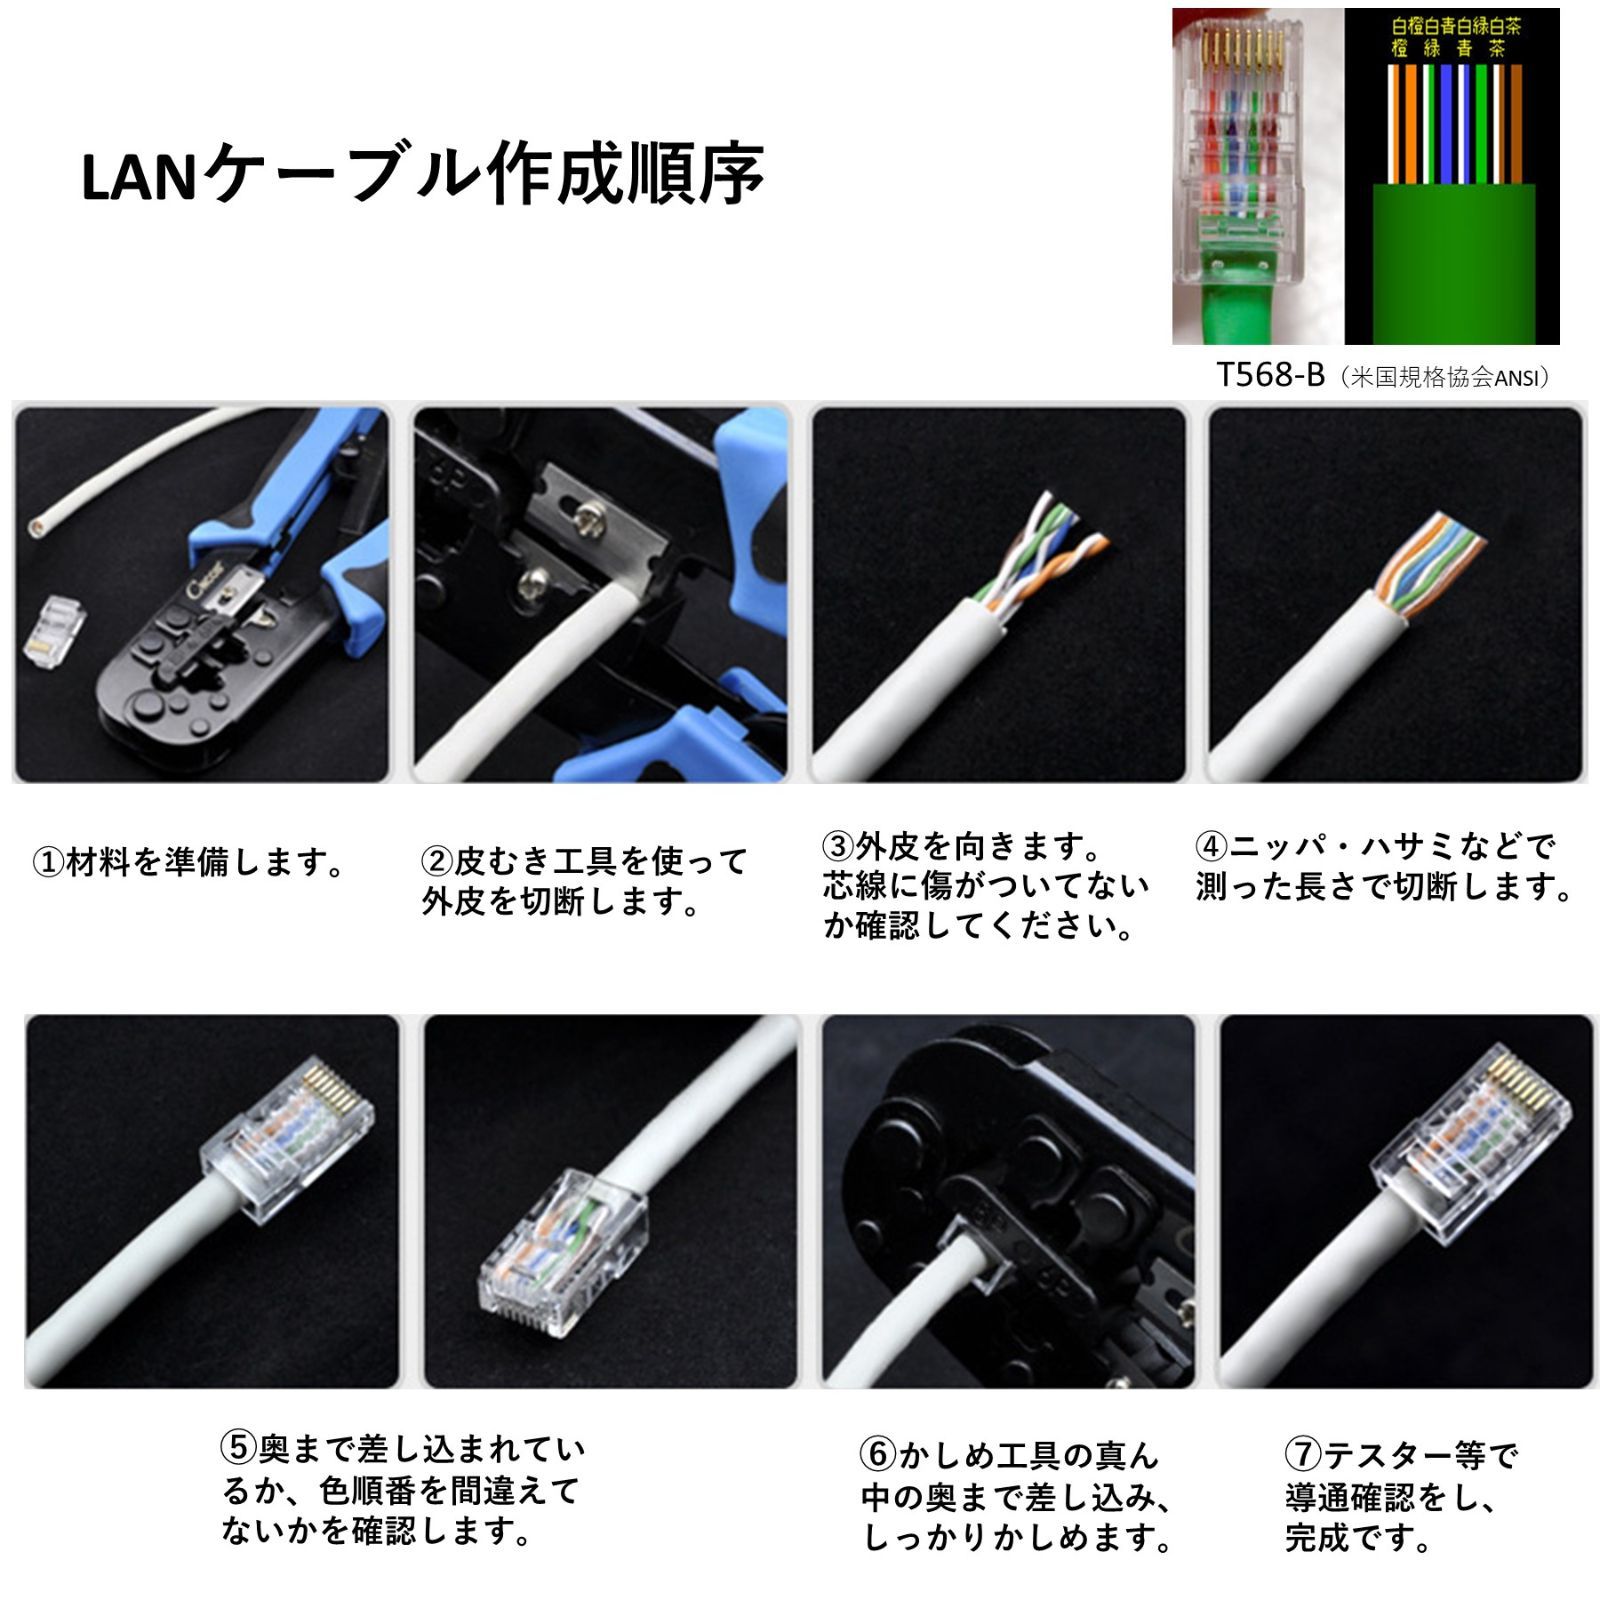 爆安 GSPOWER LANコネクター LANケーブルカバー 自作LANケーブル 選べる7色LANケーブルカバー RJ45LANケーブル 8極8芯 LANケーブル